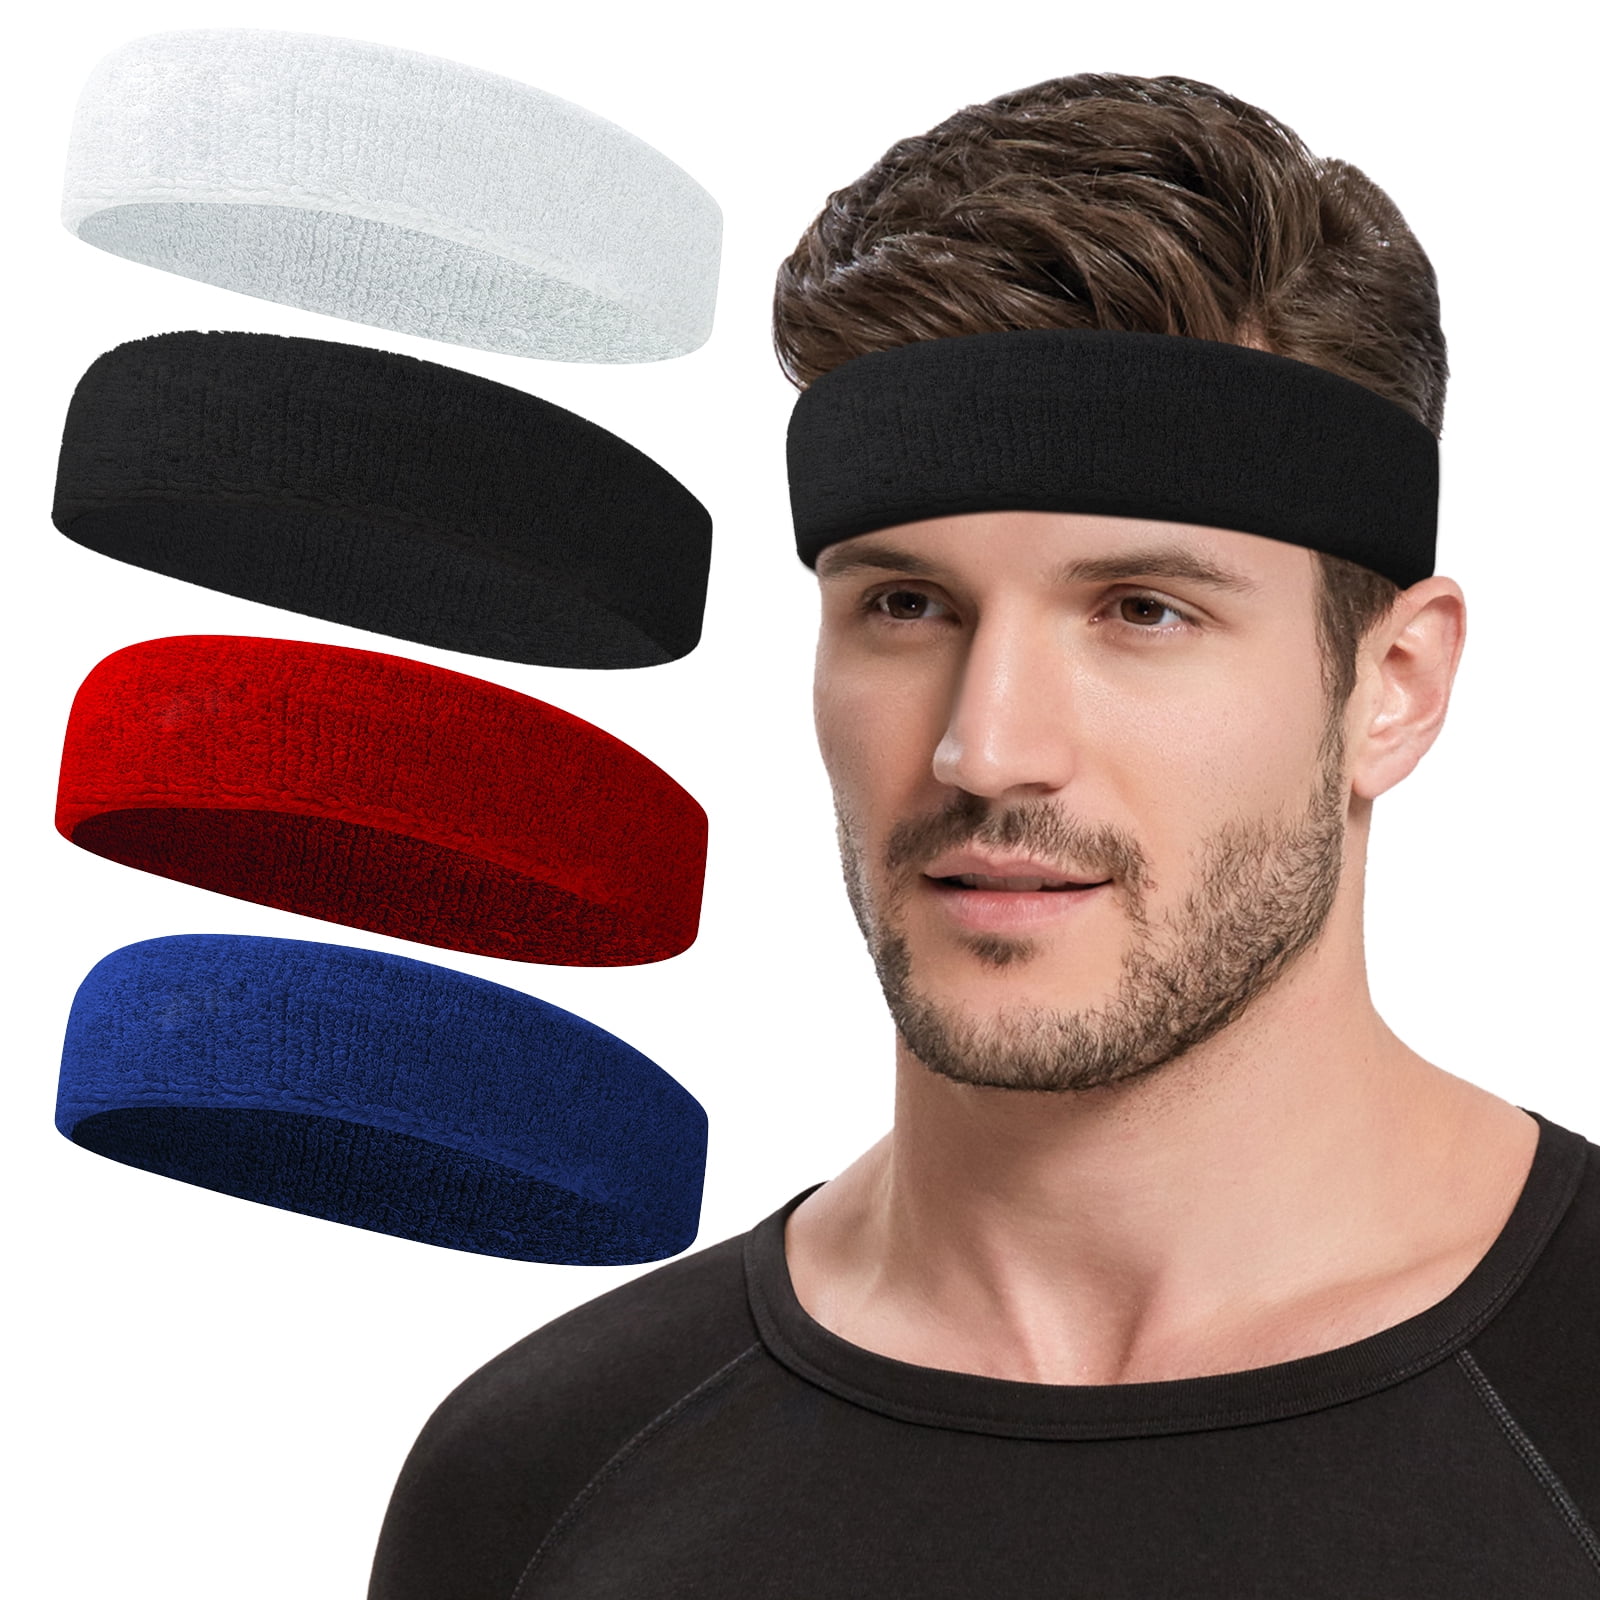 NONSTOP Sweat Bands Headbands for Men Women, Cooling Headband Pack of 4 ...